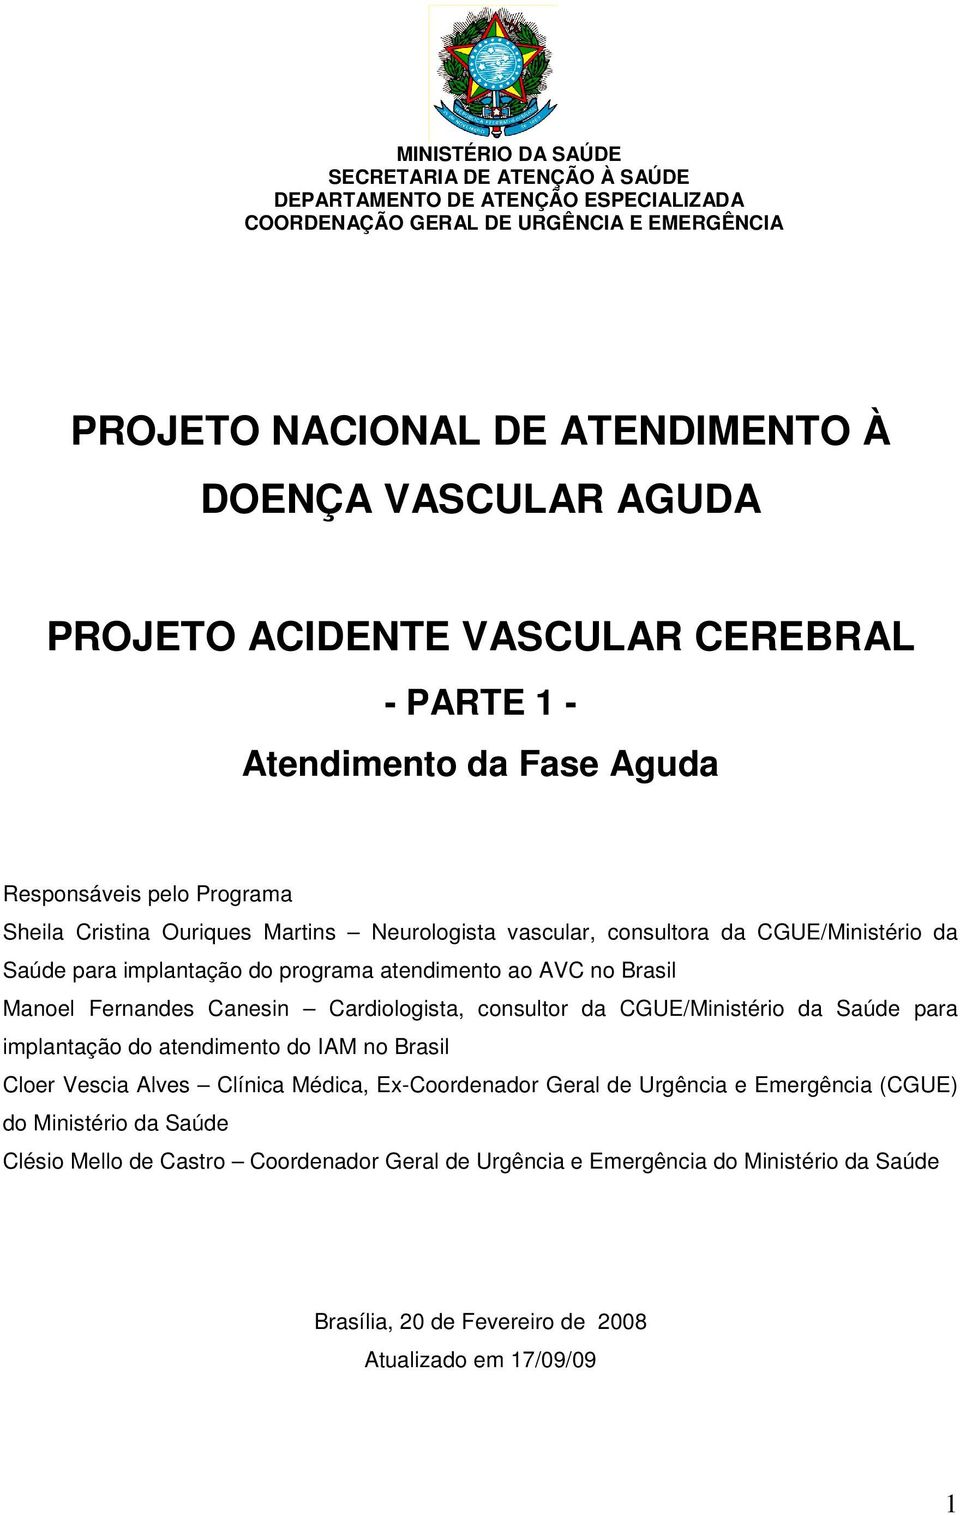 implantação do programa atendimento ao AVC no Brasil Manoel Fernandes Canesin Cardiologista, consultor da CGUE/Ministério da Saúde para implantação do atendimento do IAM no Brasil Cloer Vescia Alves